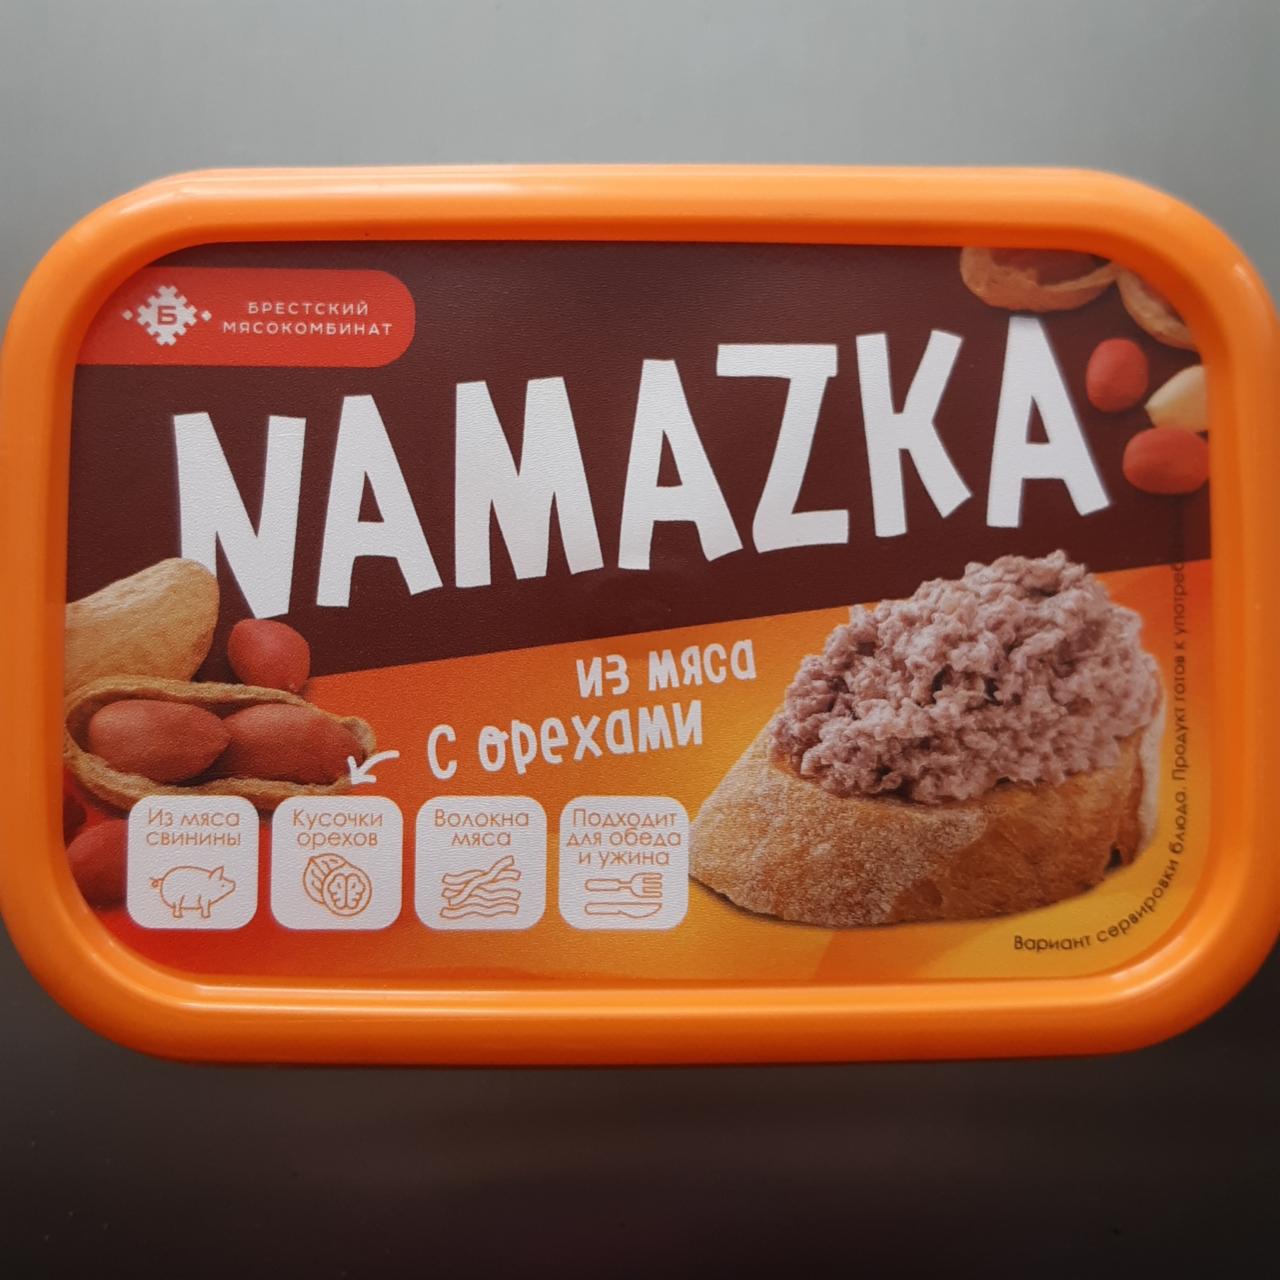 Фото - Намазка из мяса с орехами Namazka Брестский мясокомбинат